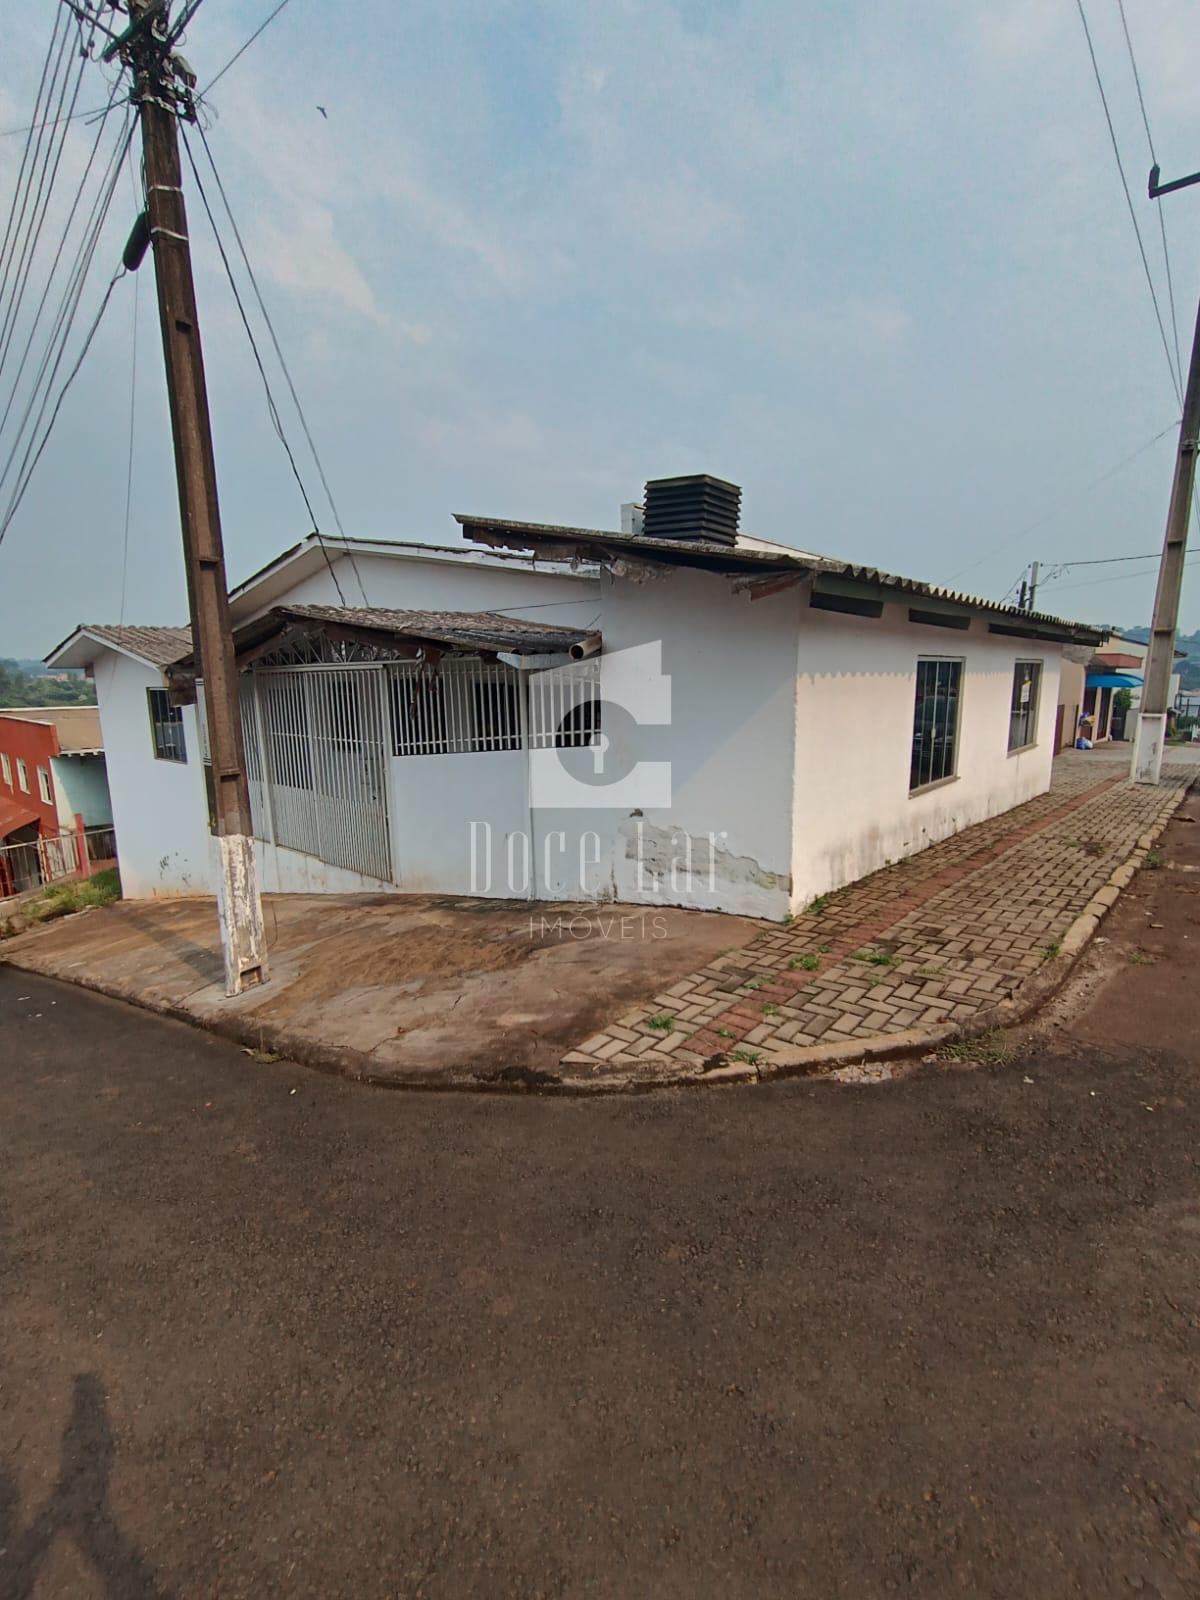 Barracão e casa para locação, Centro Sul, DOIS VIZINHOS - PR